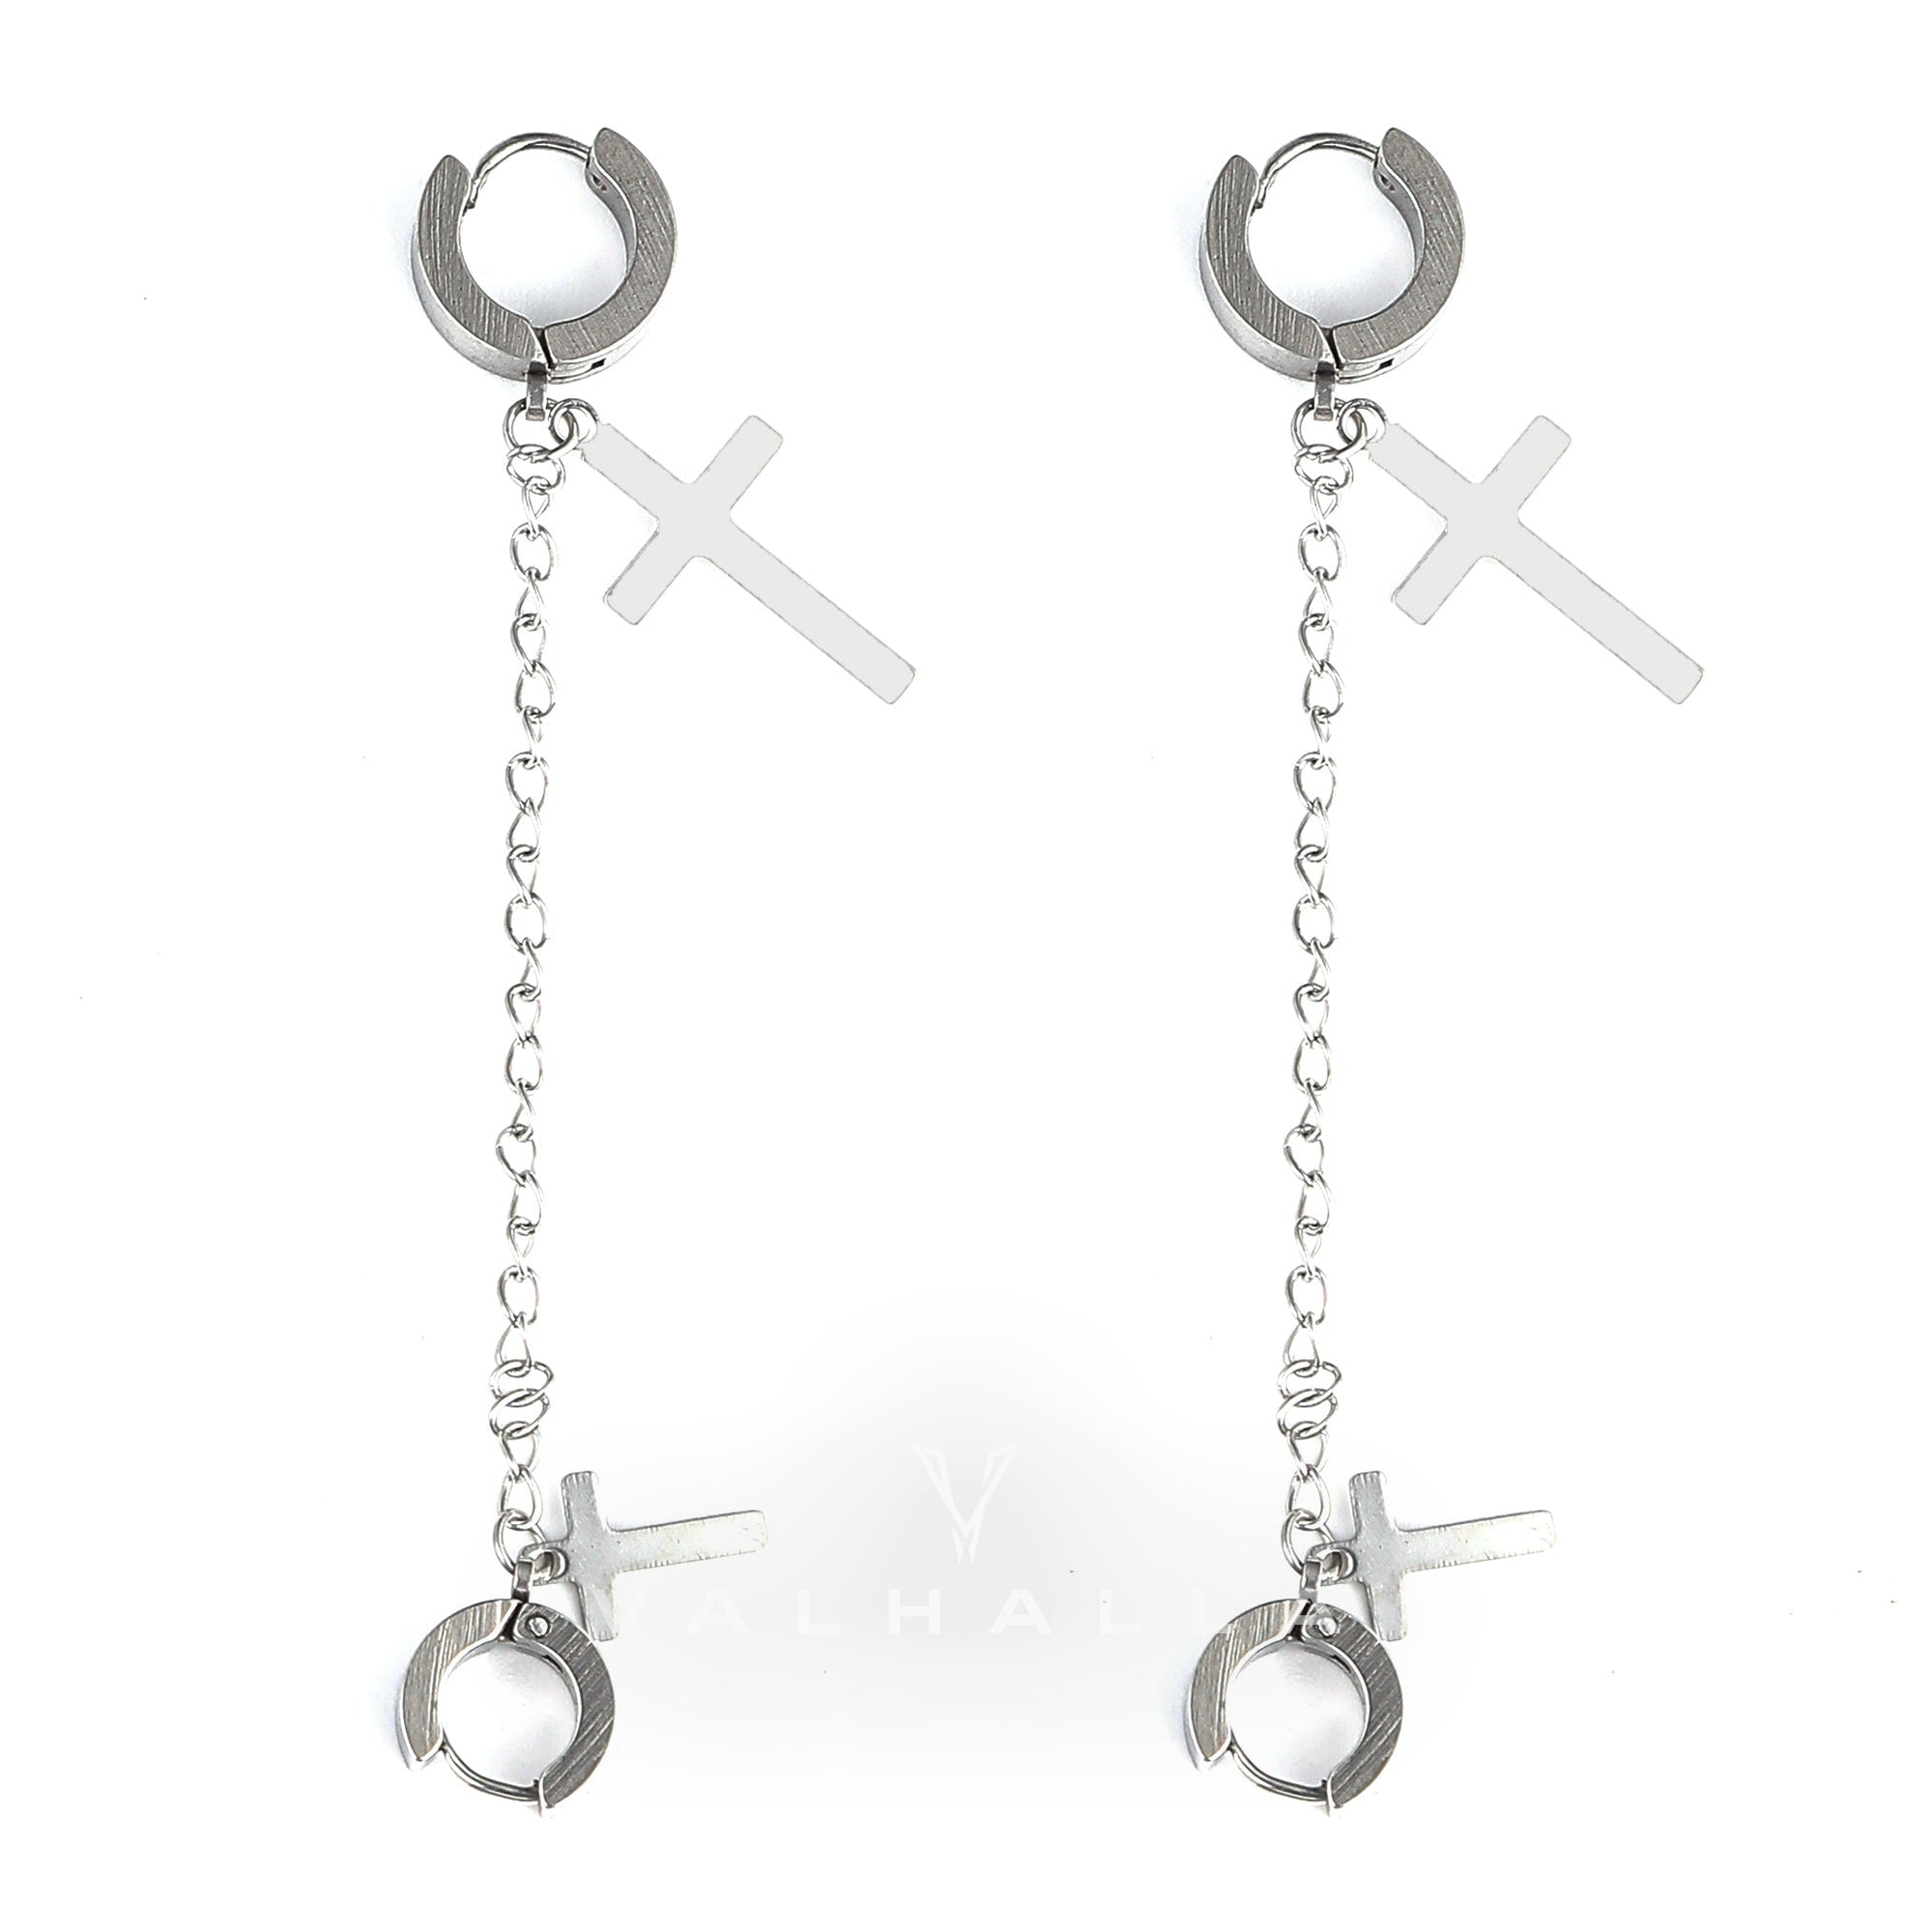 Punk Cross Tassel Stainless Steel Earrings